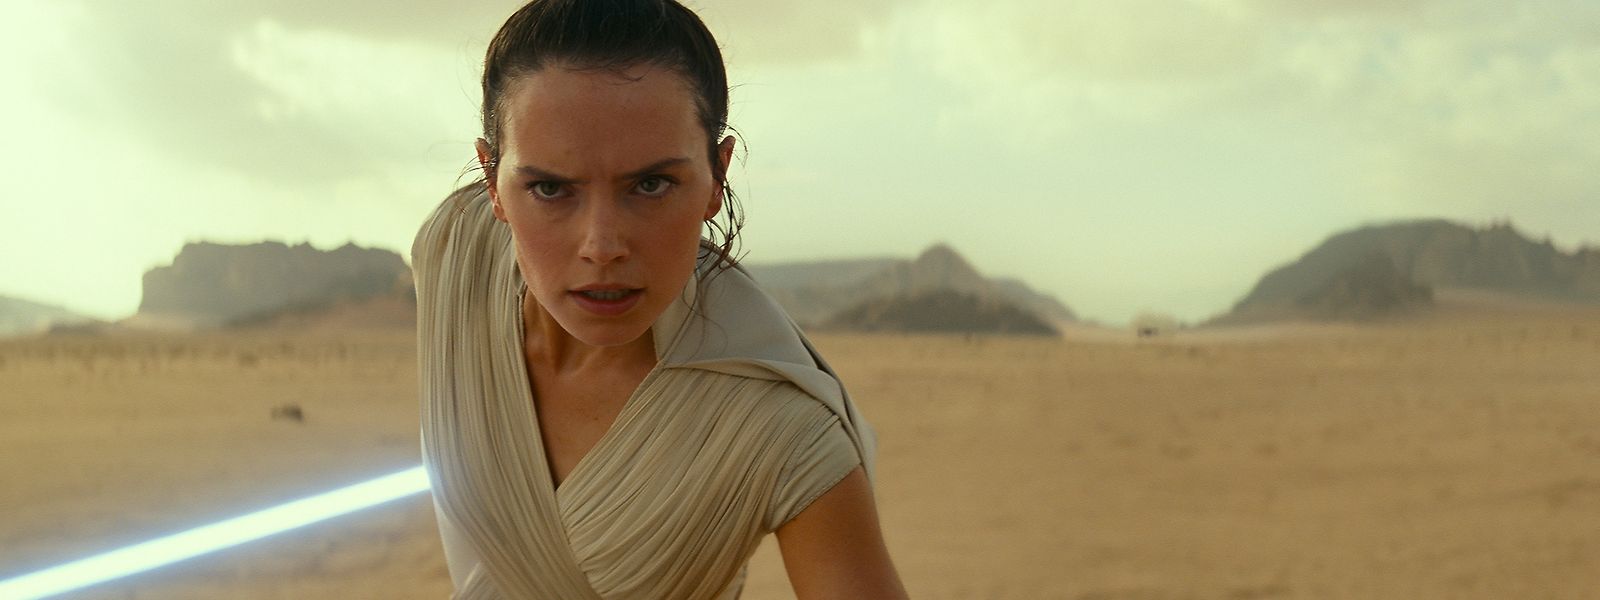 Die letzte Hoffnung der Jediritter ruht auf Rey (Daisy Ridley) - auch im wahren Leben ist jeder Einzelne von uns im Kampf gegen die dunkle Seite der Macht efordert. 